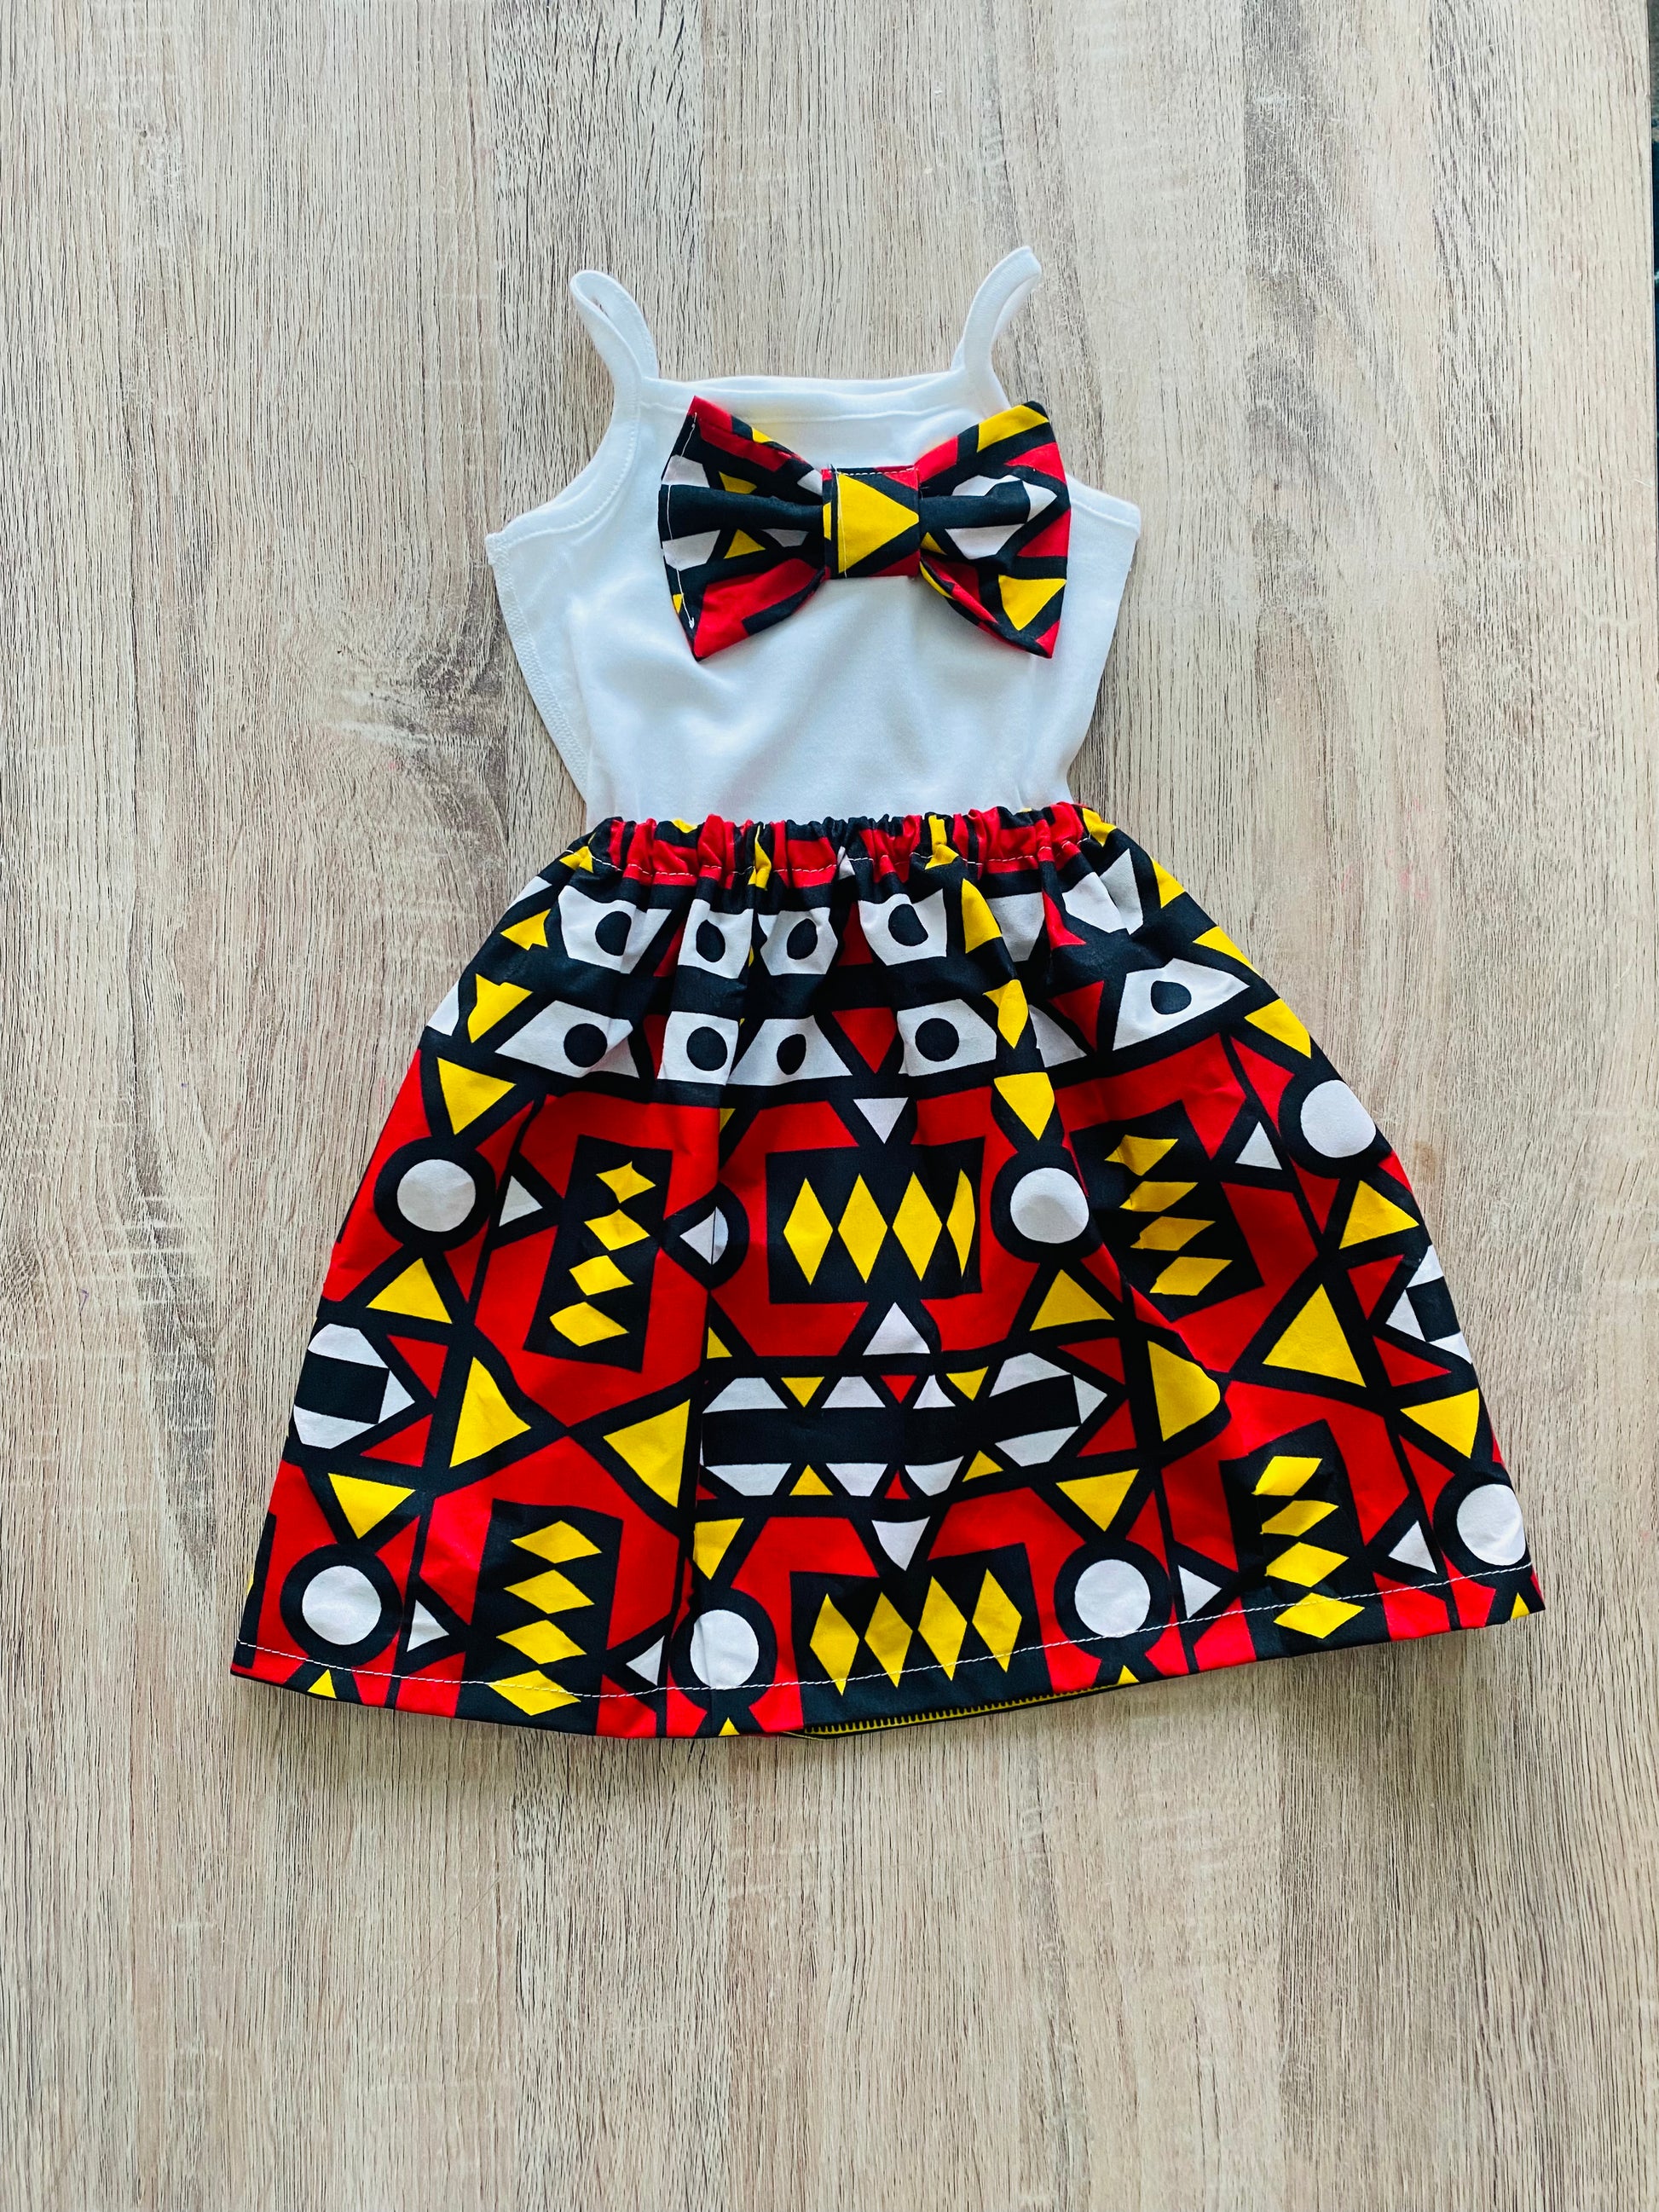 Tenue africaine Bebe fille - vêtement en pagne bébé - cadeau laid fille